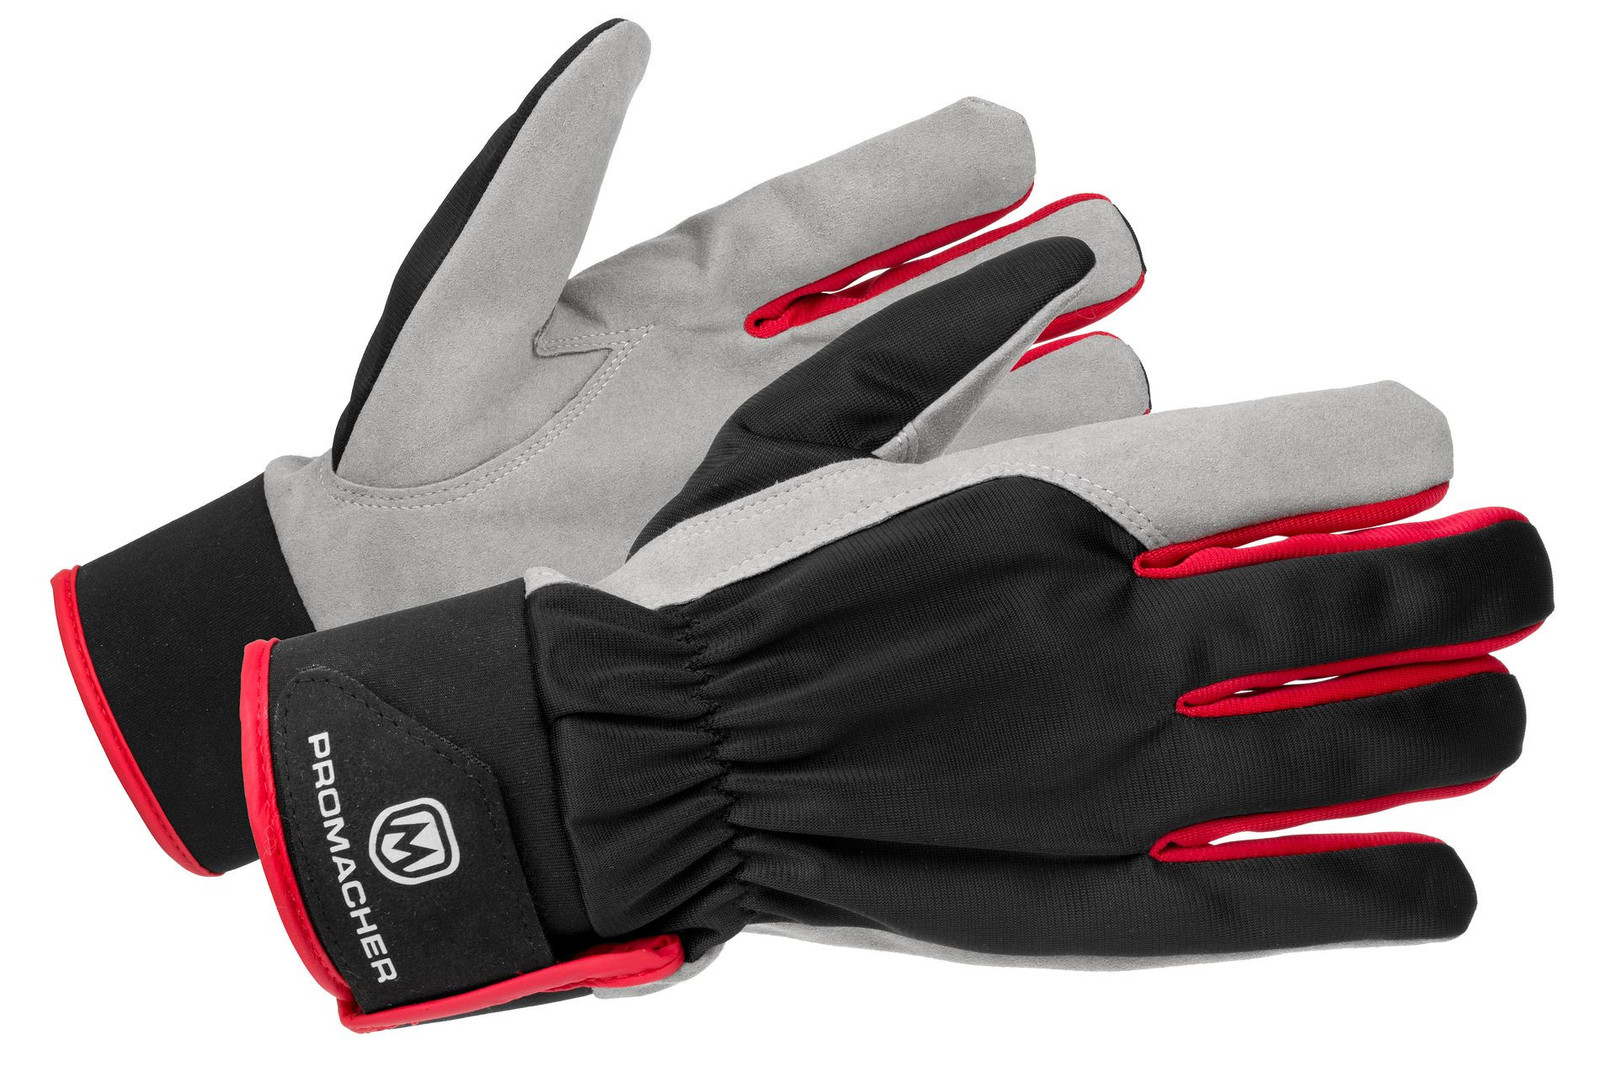 Pracovné rukavice Promacher Carpos Velcro kombinované - veľkosť: 10/XL, farba: sivá/červená